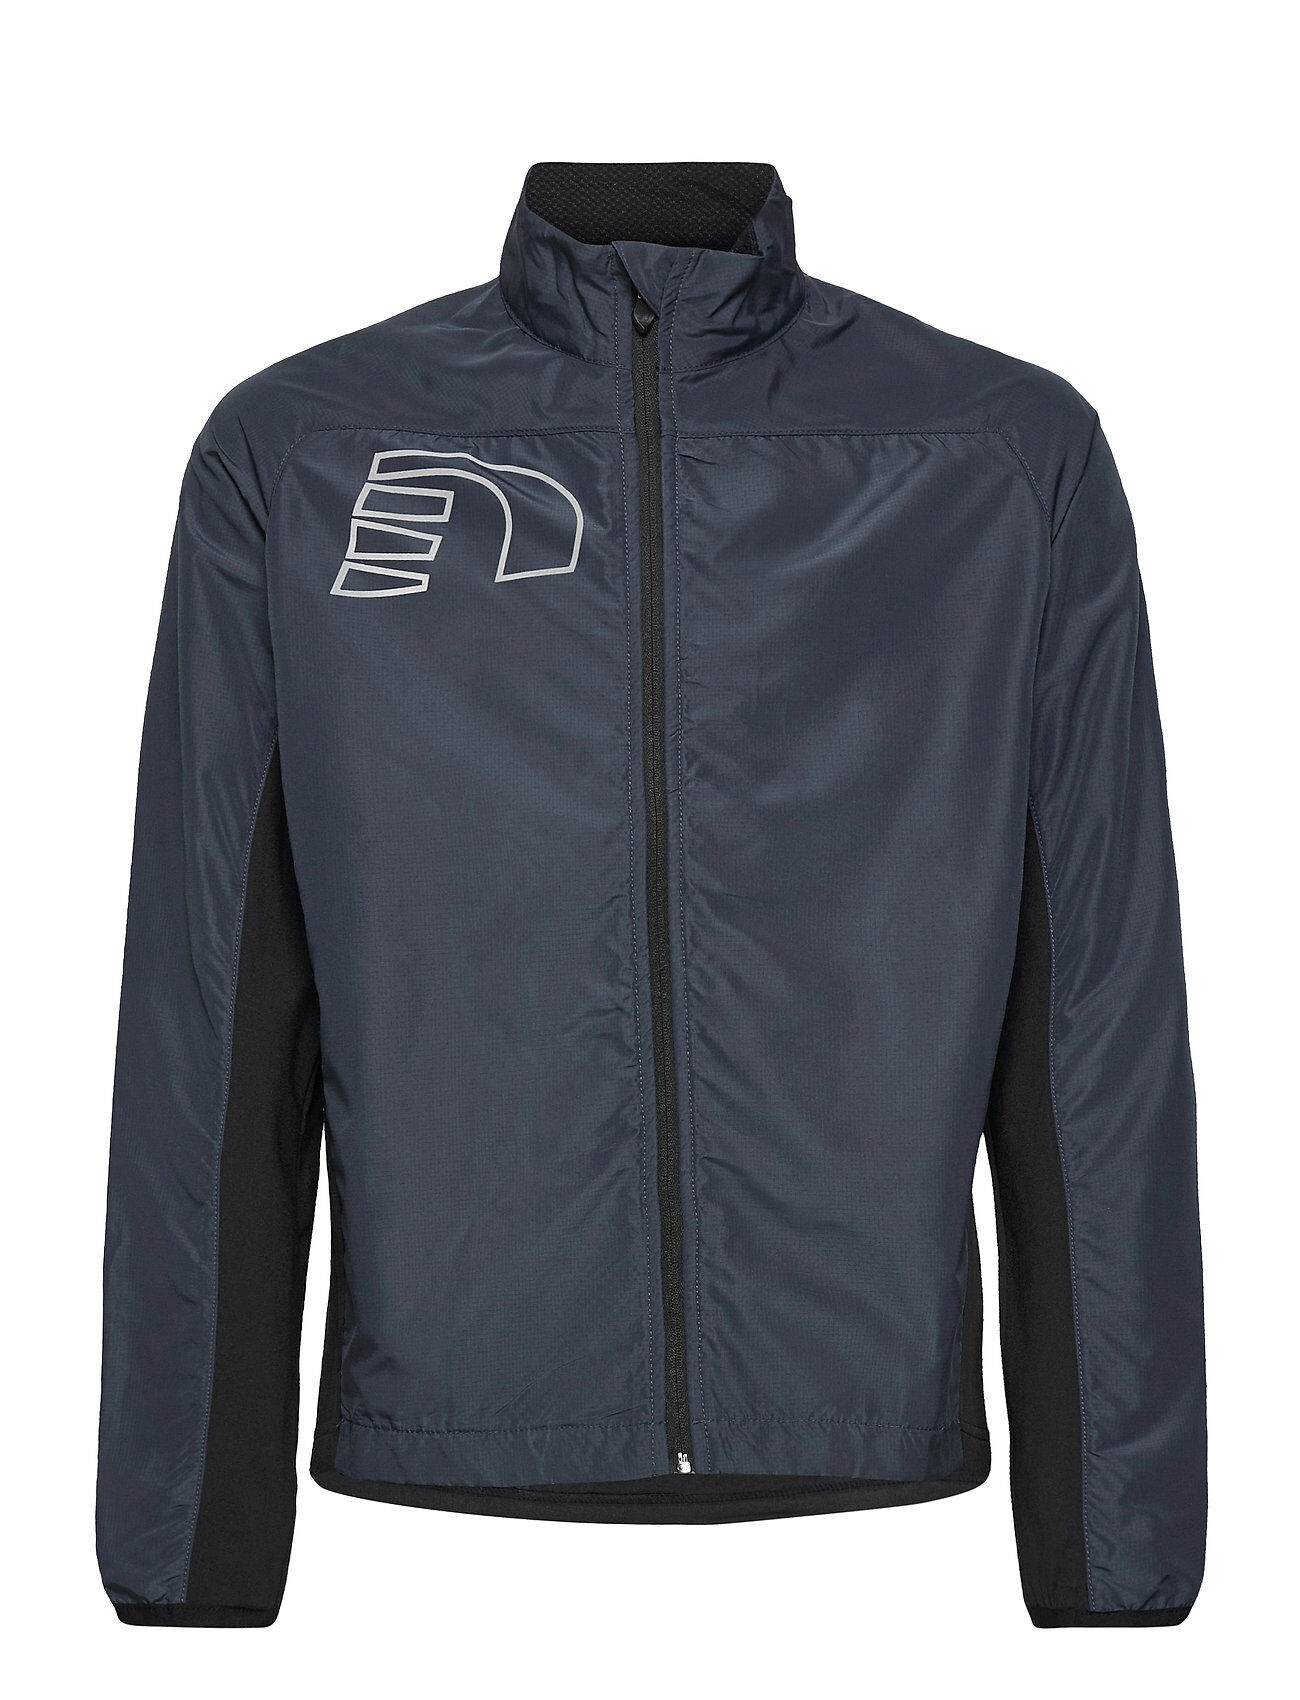 Newline Core Cross Jacket Outerwear Jackets & Coats Windbreaker Blå Newline